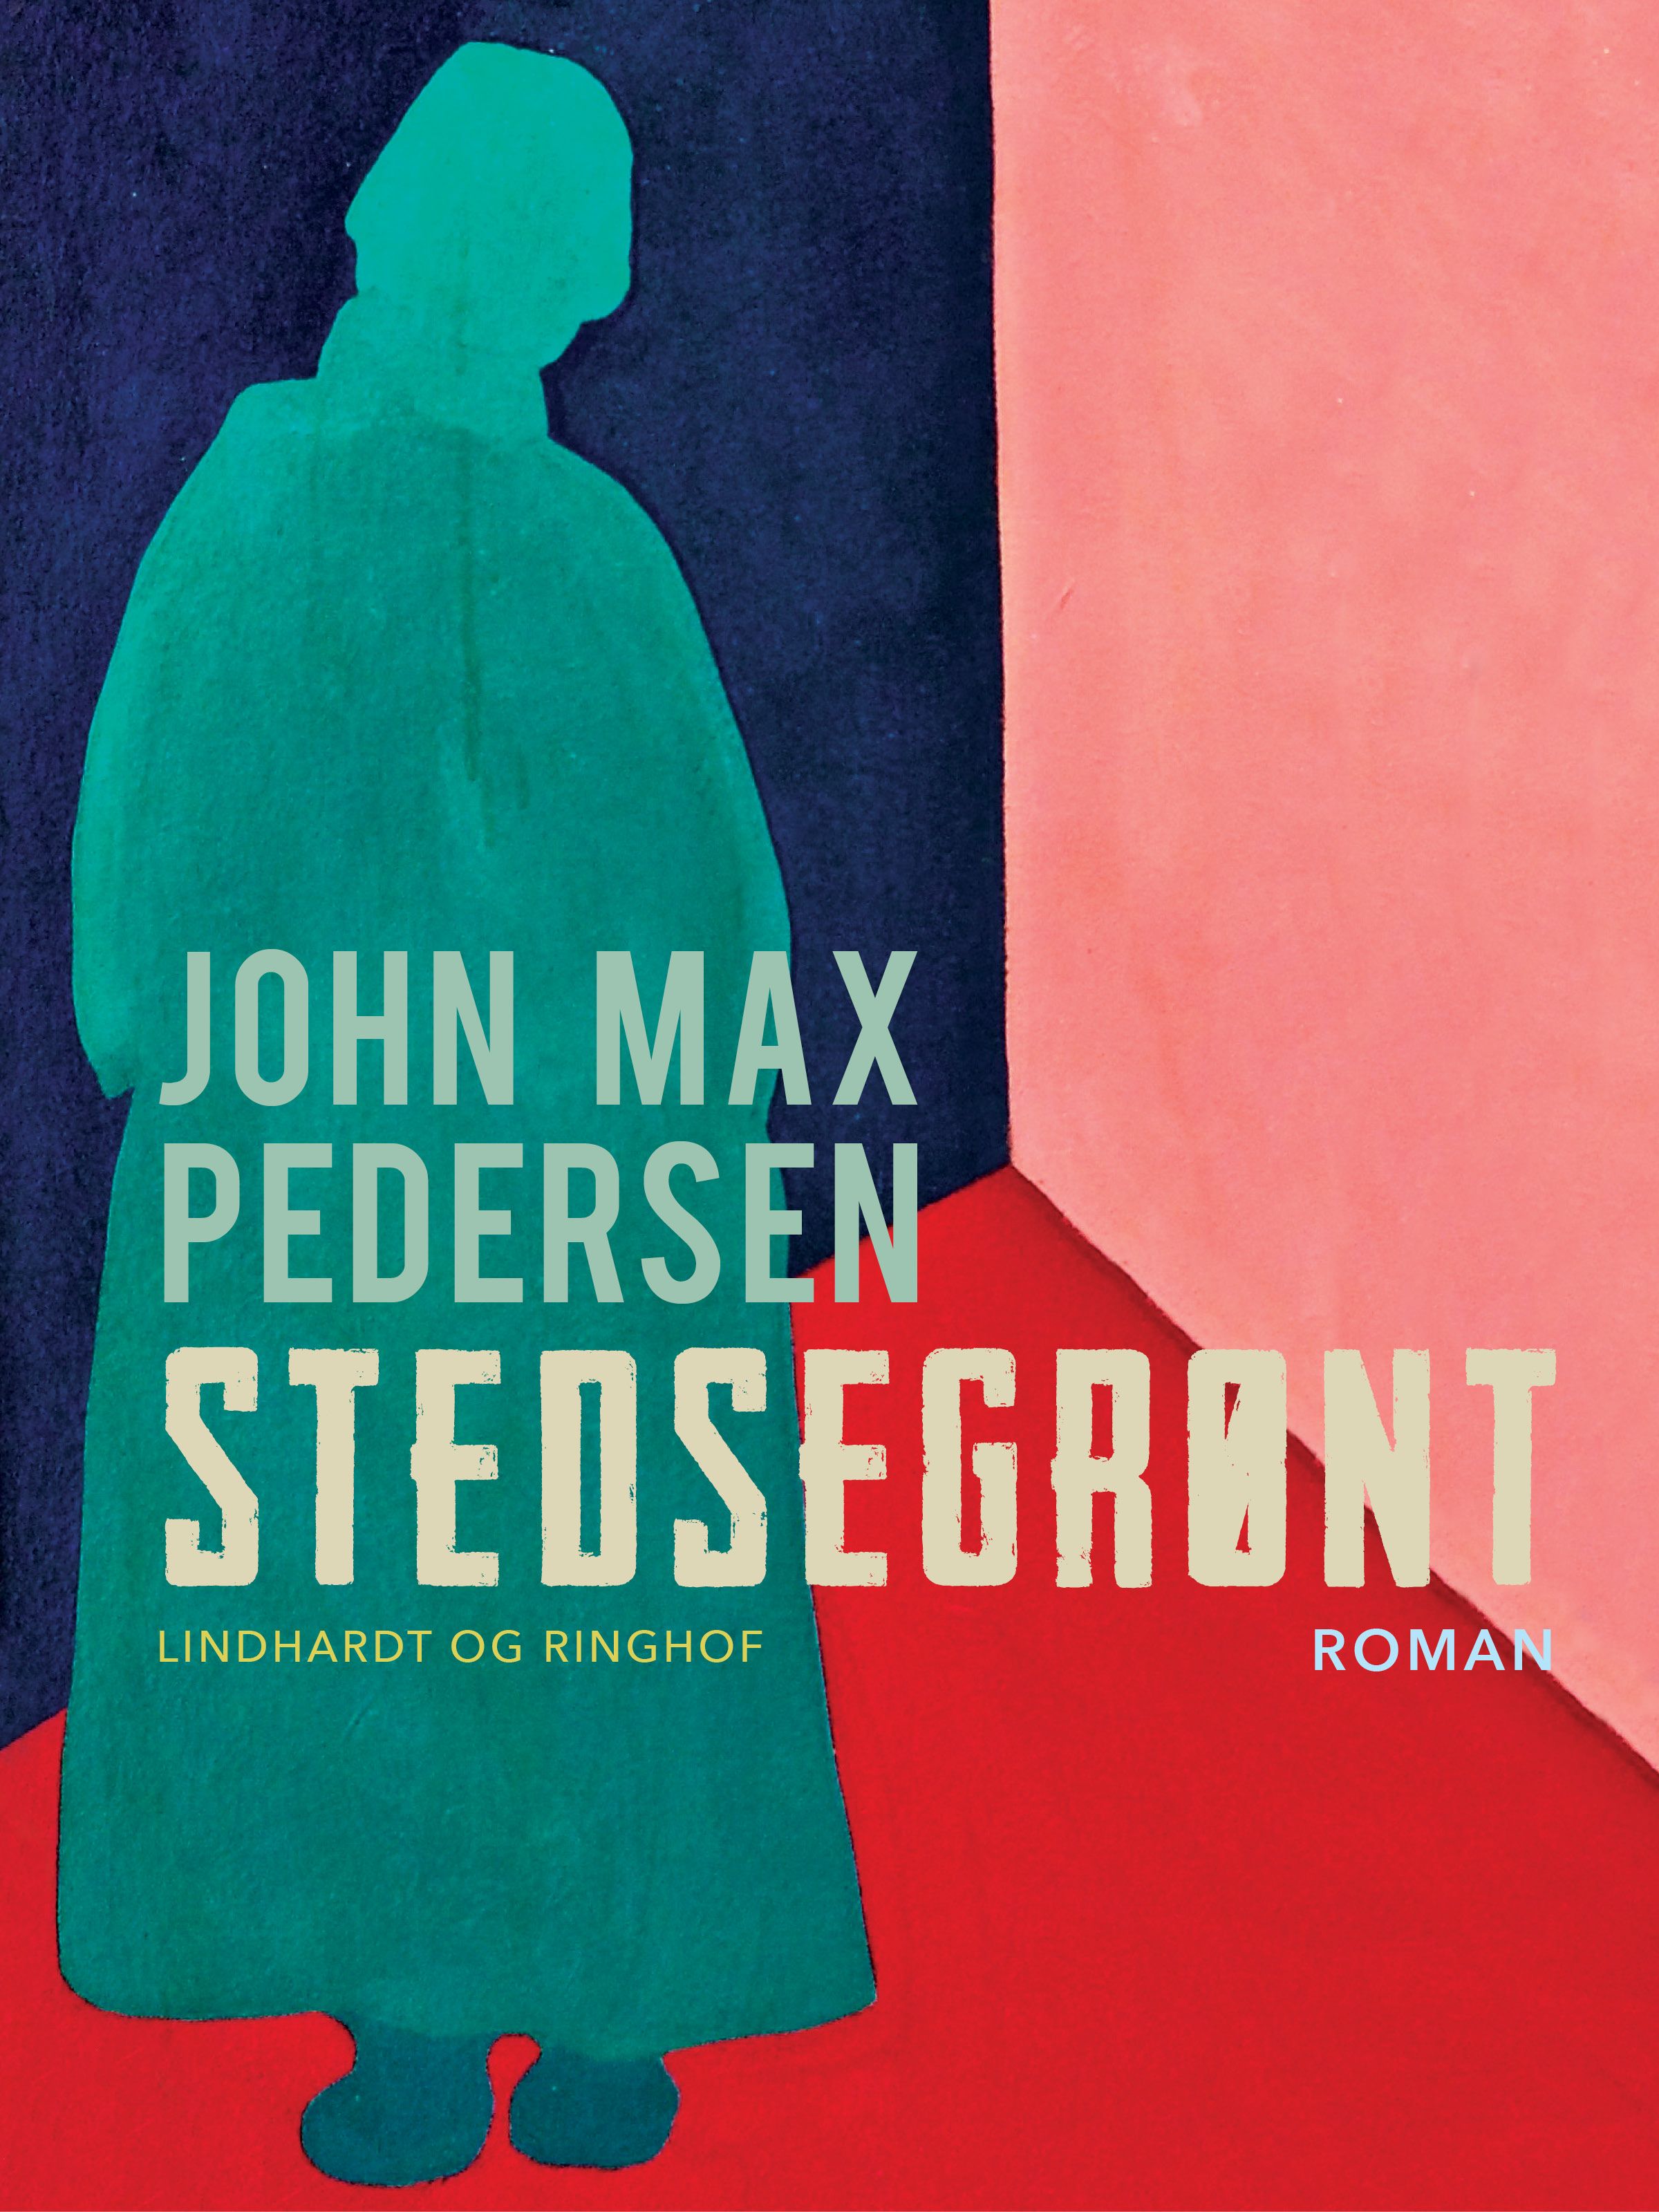 Stedsegrønt, e-bog af John Max Pedersen